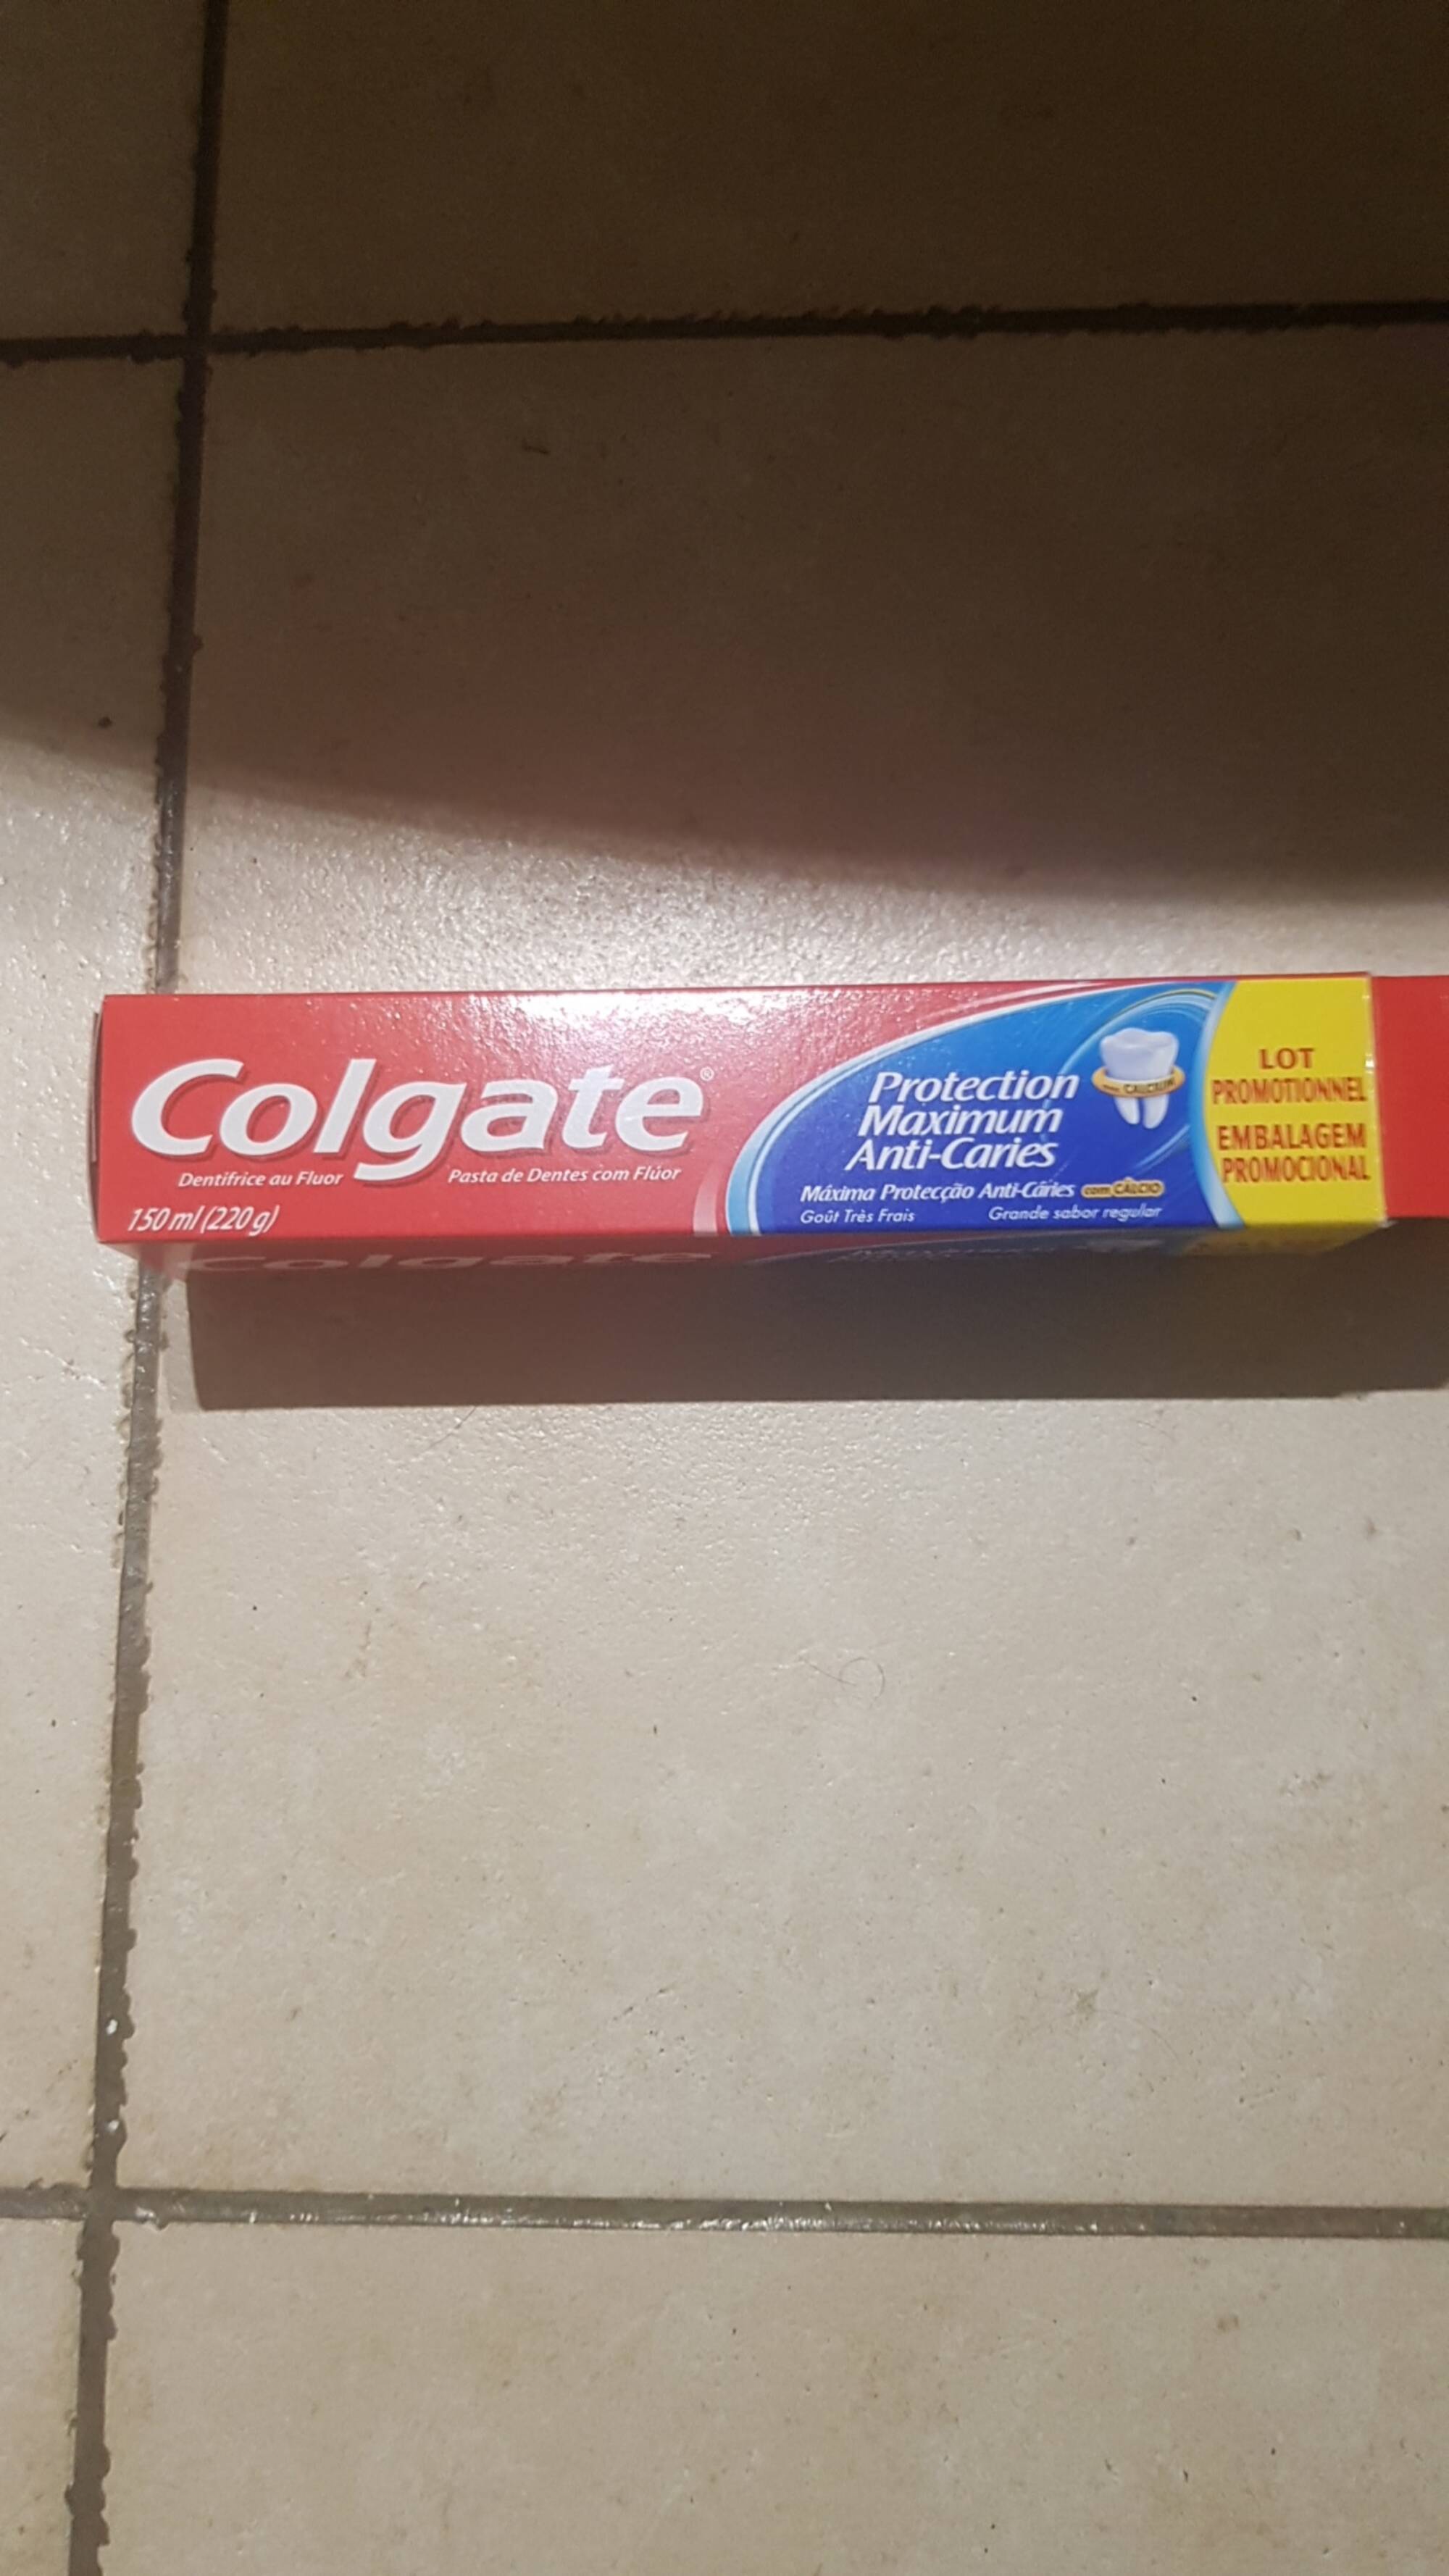 COLGATE - Protection maximum anti-caries - Dentifrice